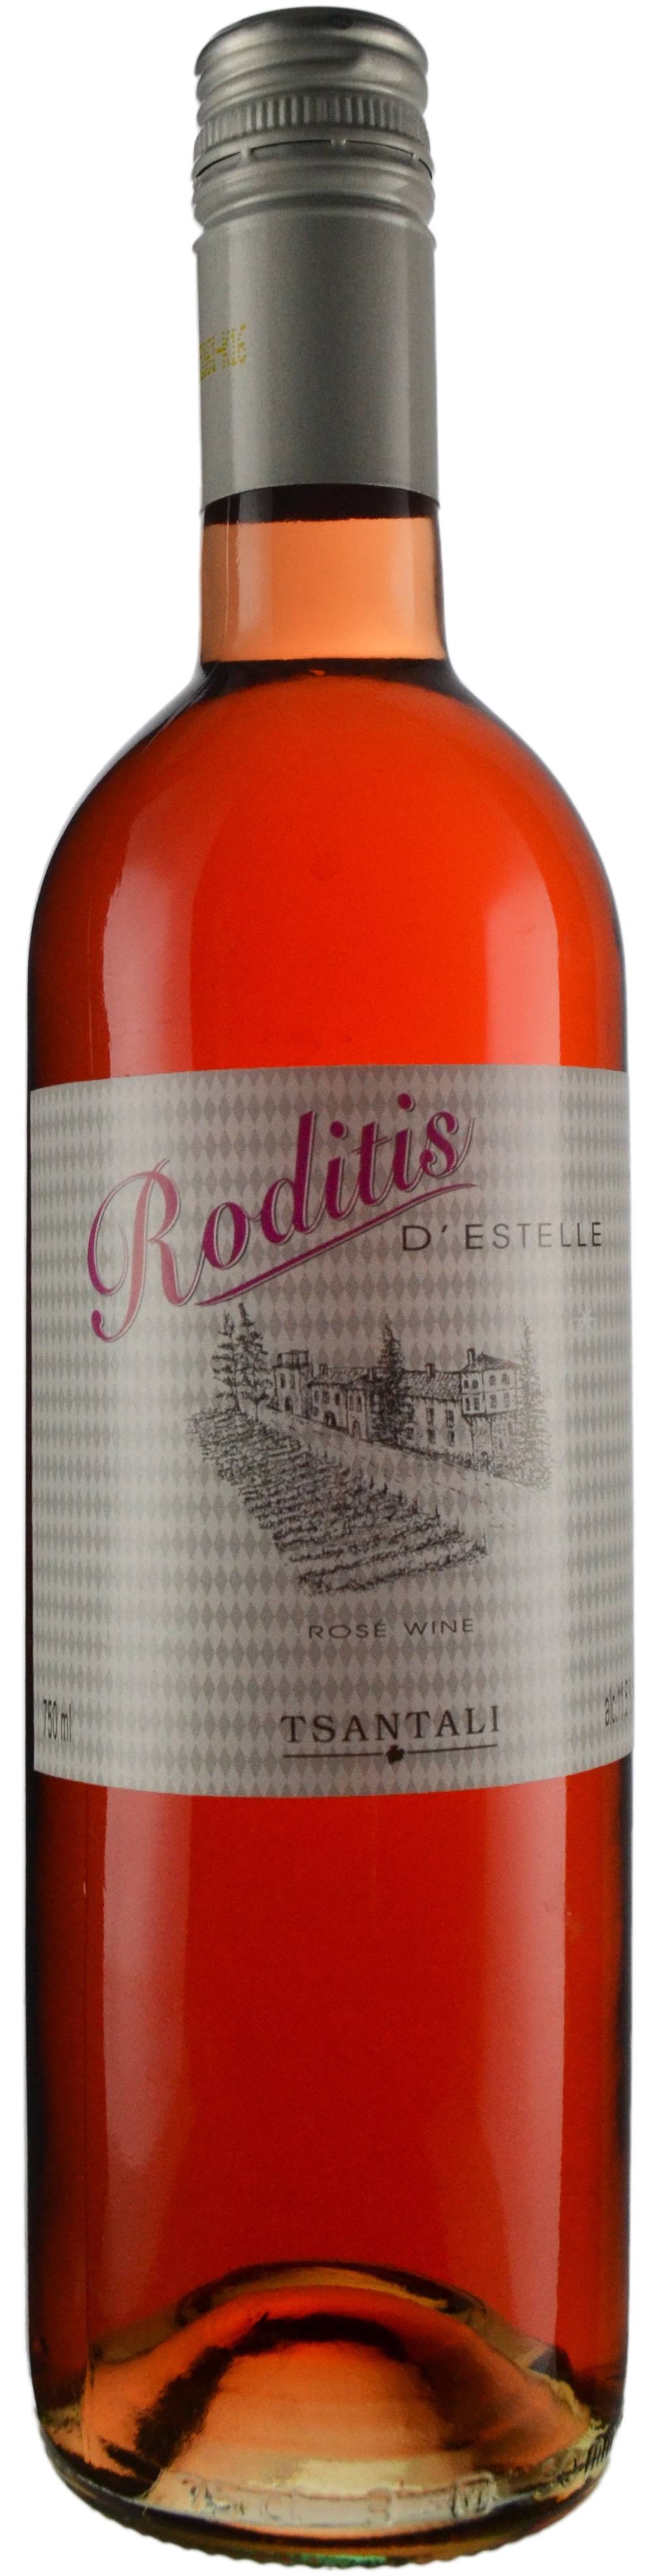 Tsantali Roditis Wine - 750 Milliliters - Bread Garden Market - Delivered by Mercato